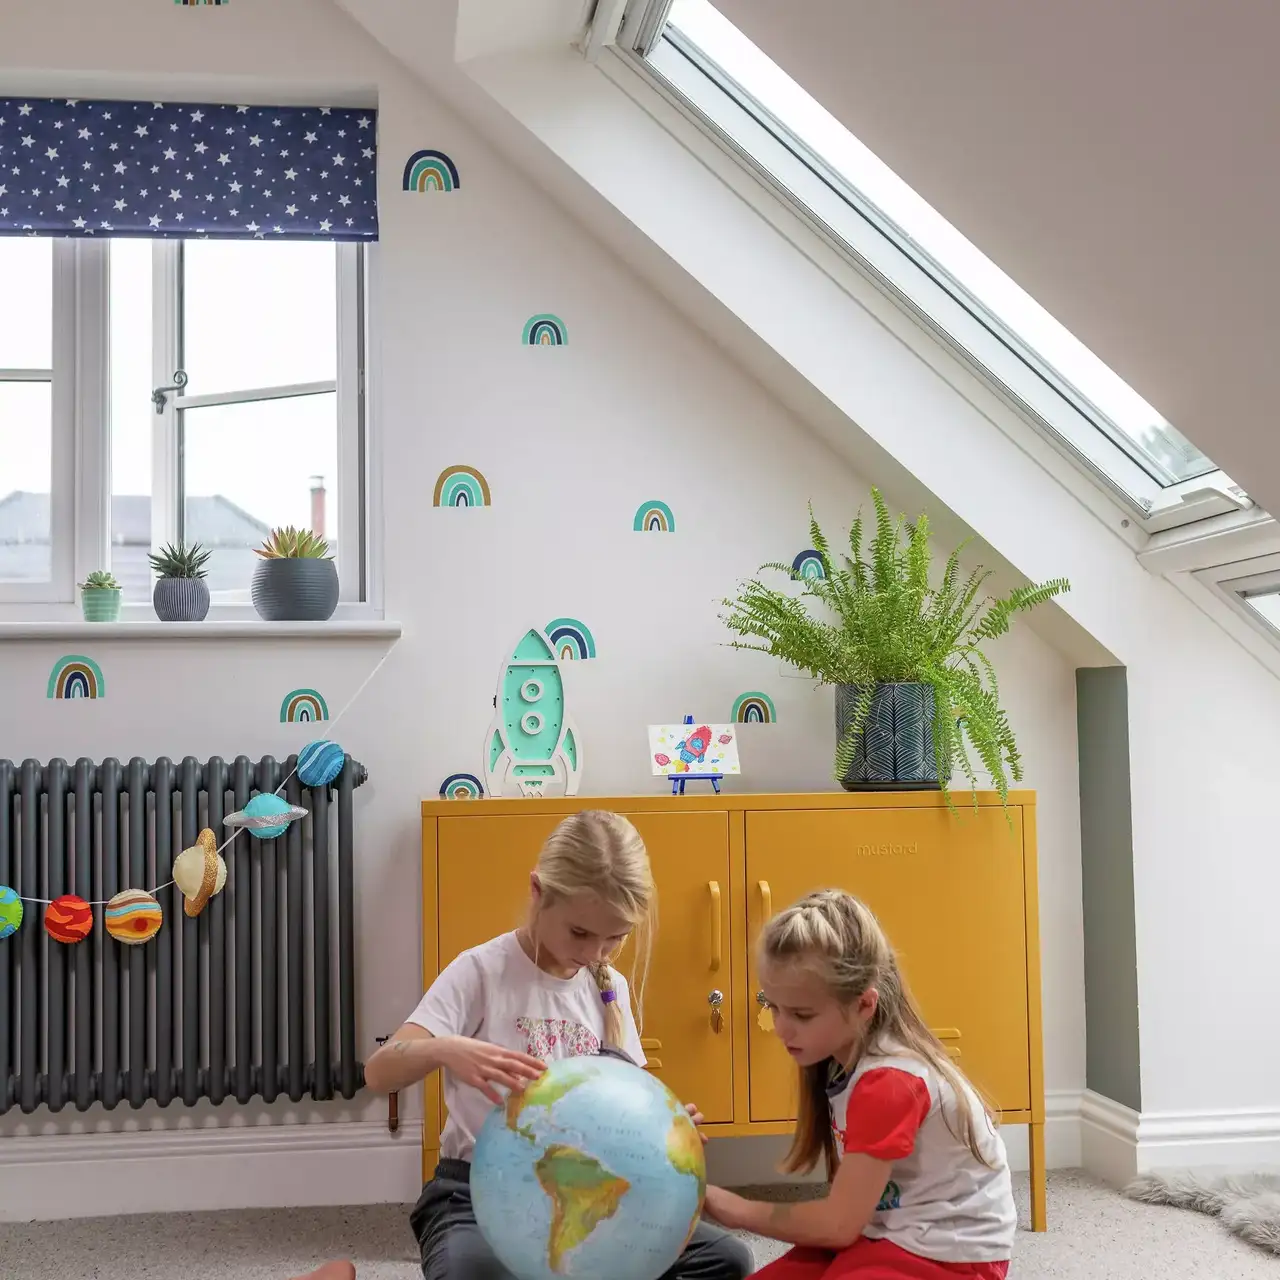 Kinderzimmer mit natürlichem Licht von VELUX Dachflächenfenster, bunter Dekoration und Lernaktivitäten.